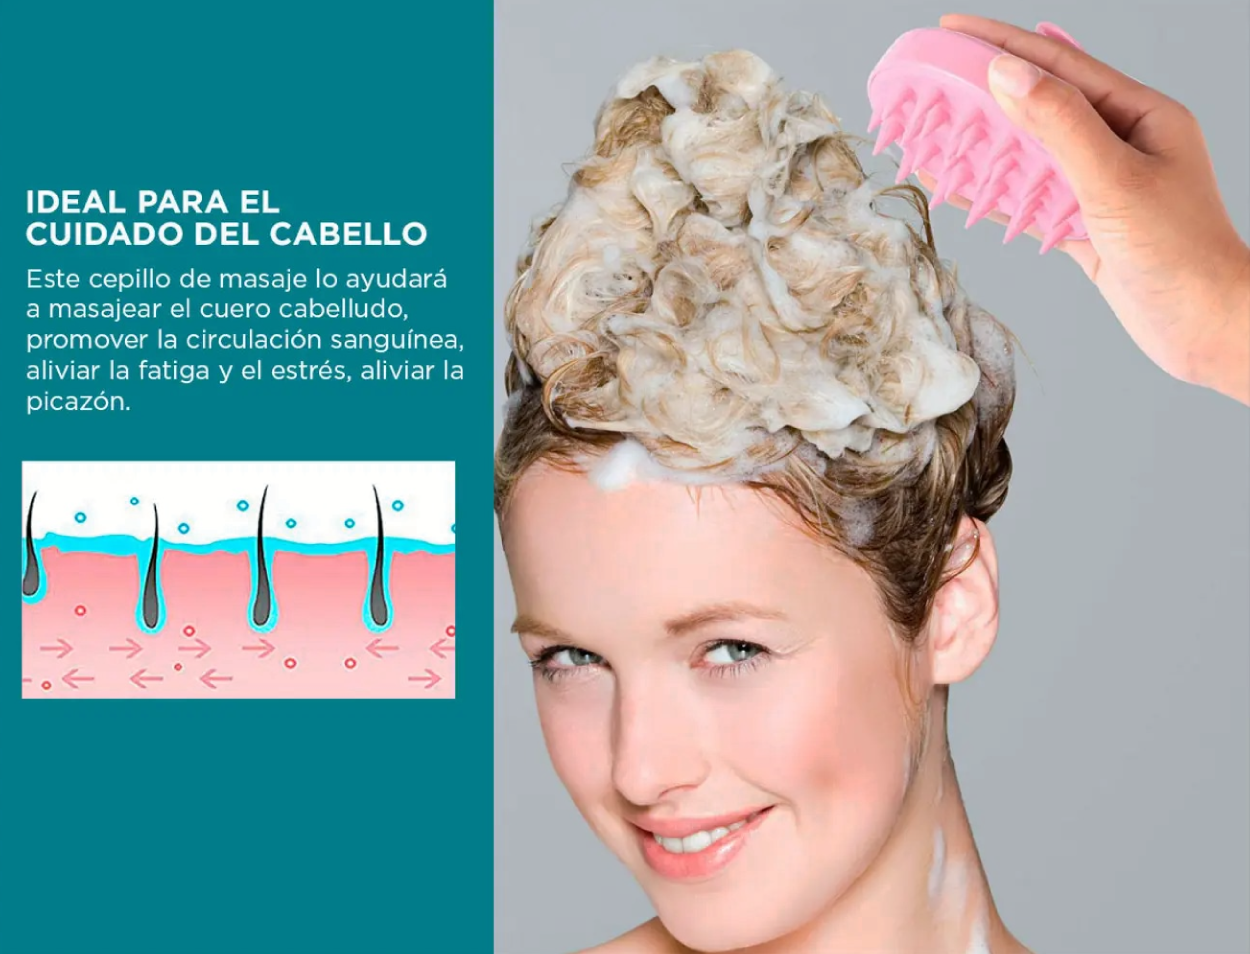 cepillo masajeador de cuero cabelludo comprar color rosado tienda onlineshoppingcenterg colombia centro de compras en linea osc